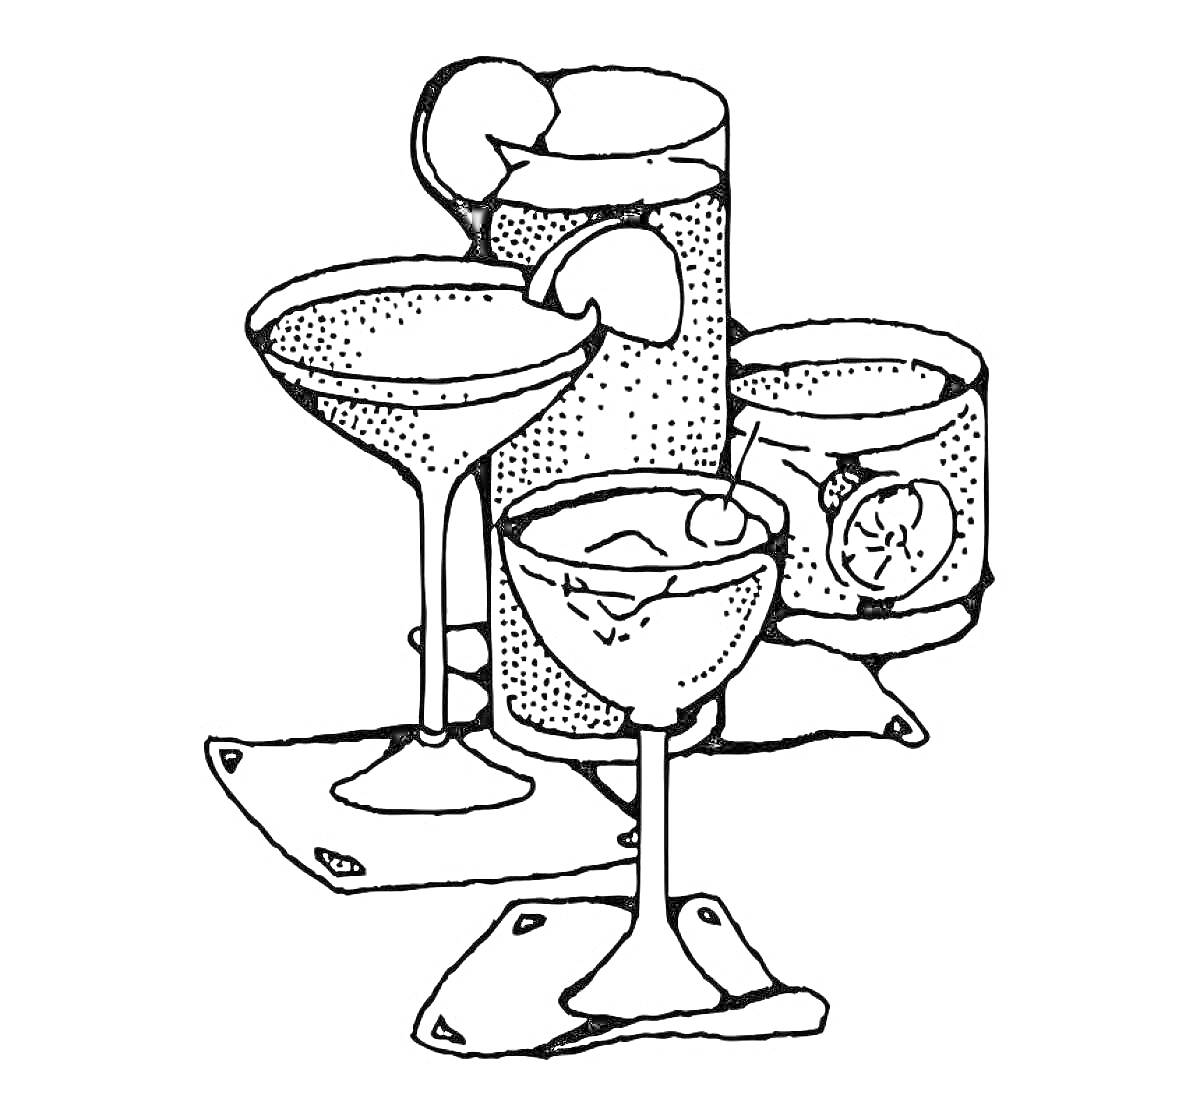 Раскраска Четыре коктейля с украшениями (лимон, вишня, лед), Коктейльные бокалы с кубиками льда, украшениями фруктов и салфетками